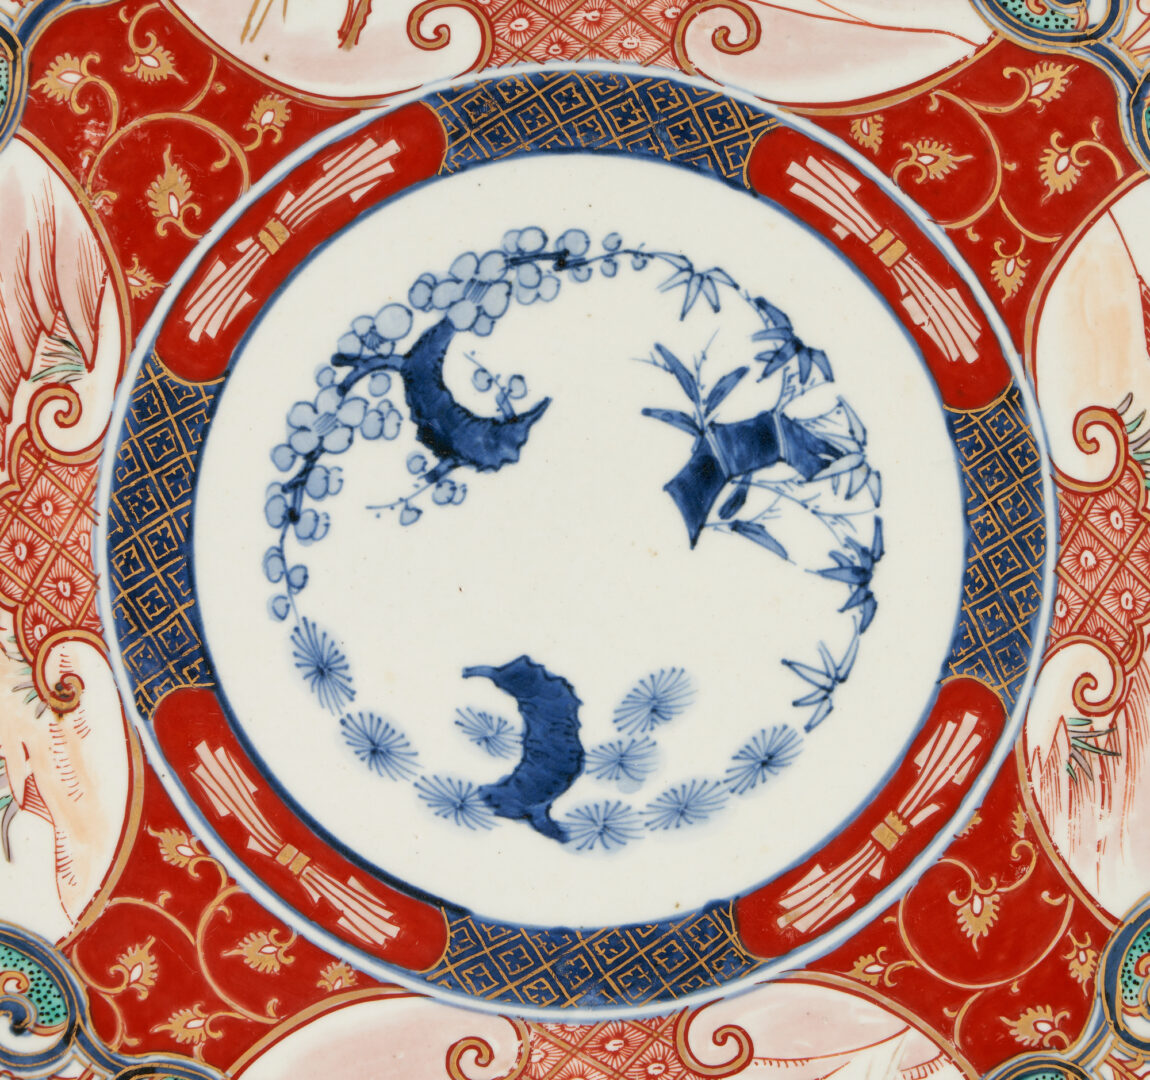 Lot 964: 3 pcs. Japanese Porcelain: Imari, Kutani, & Satsuma